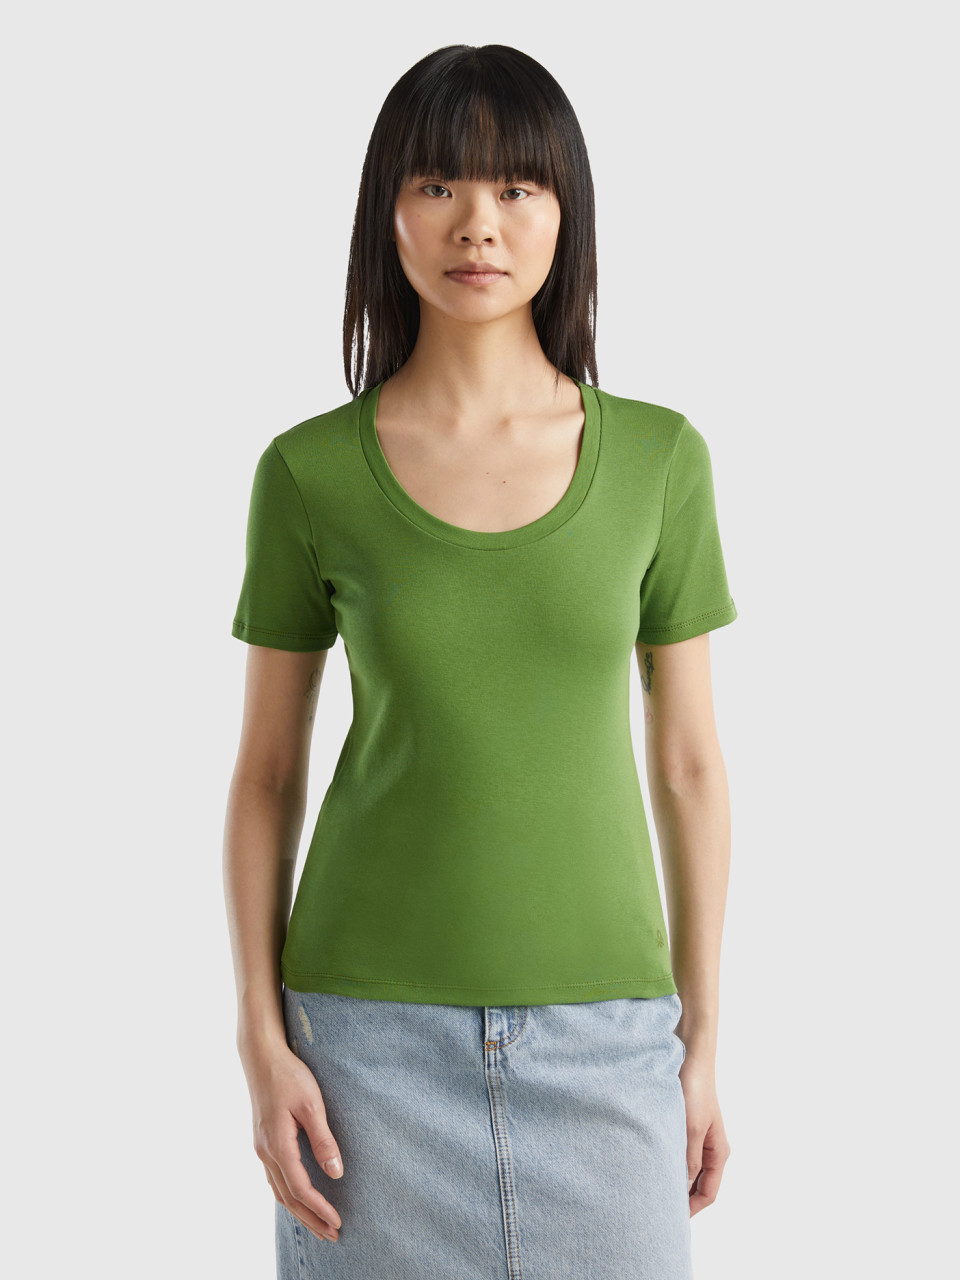 Benetton, T-shirt Manica Corta In Cotone A Fibra Lunga, Verde Militare, Donna